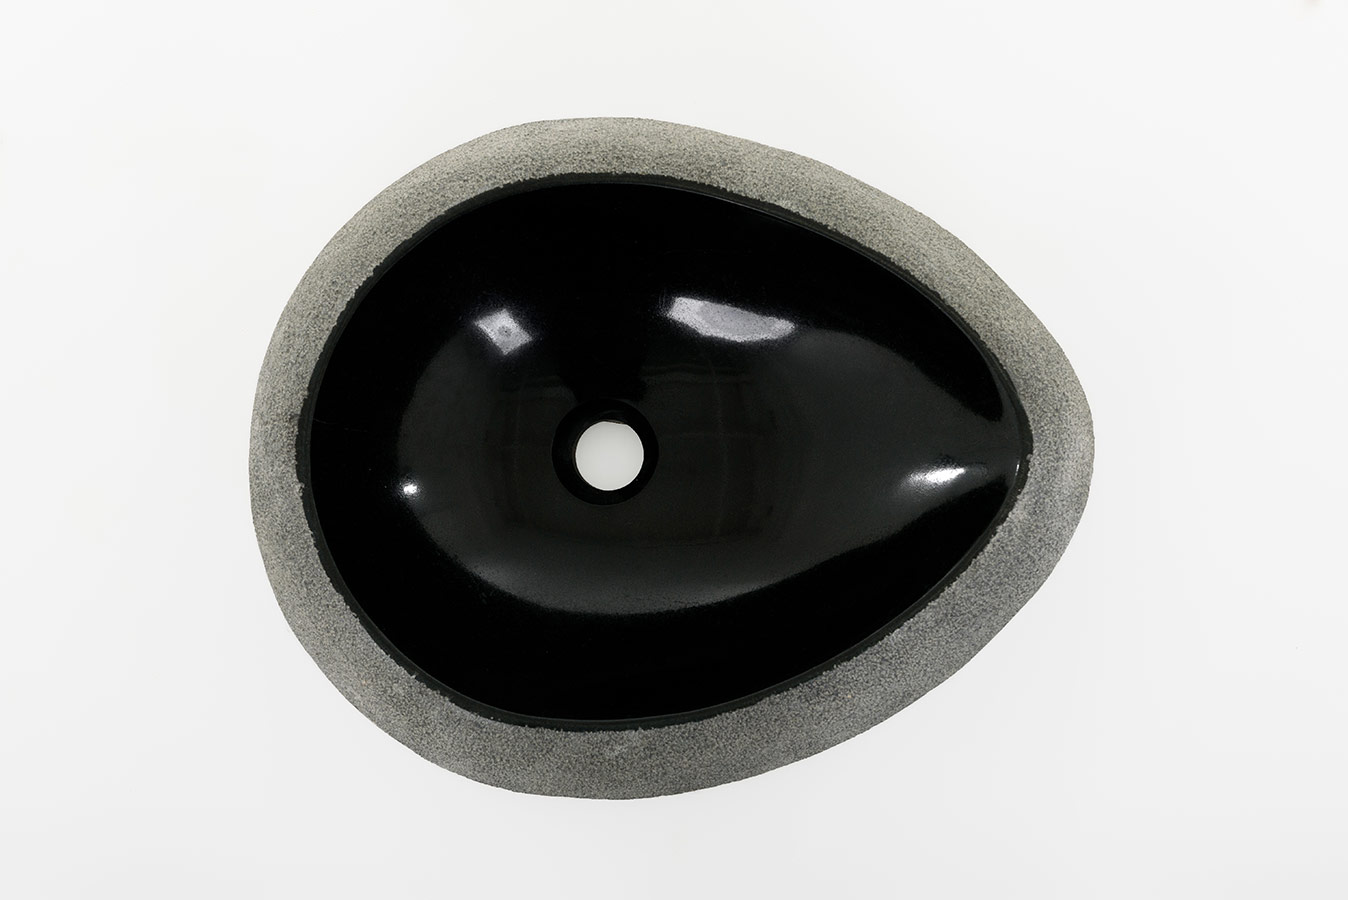 Hainan black oval basin